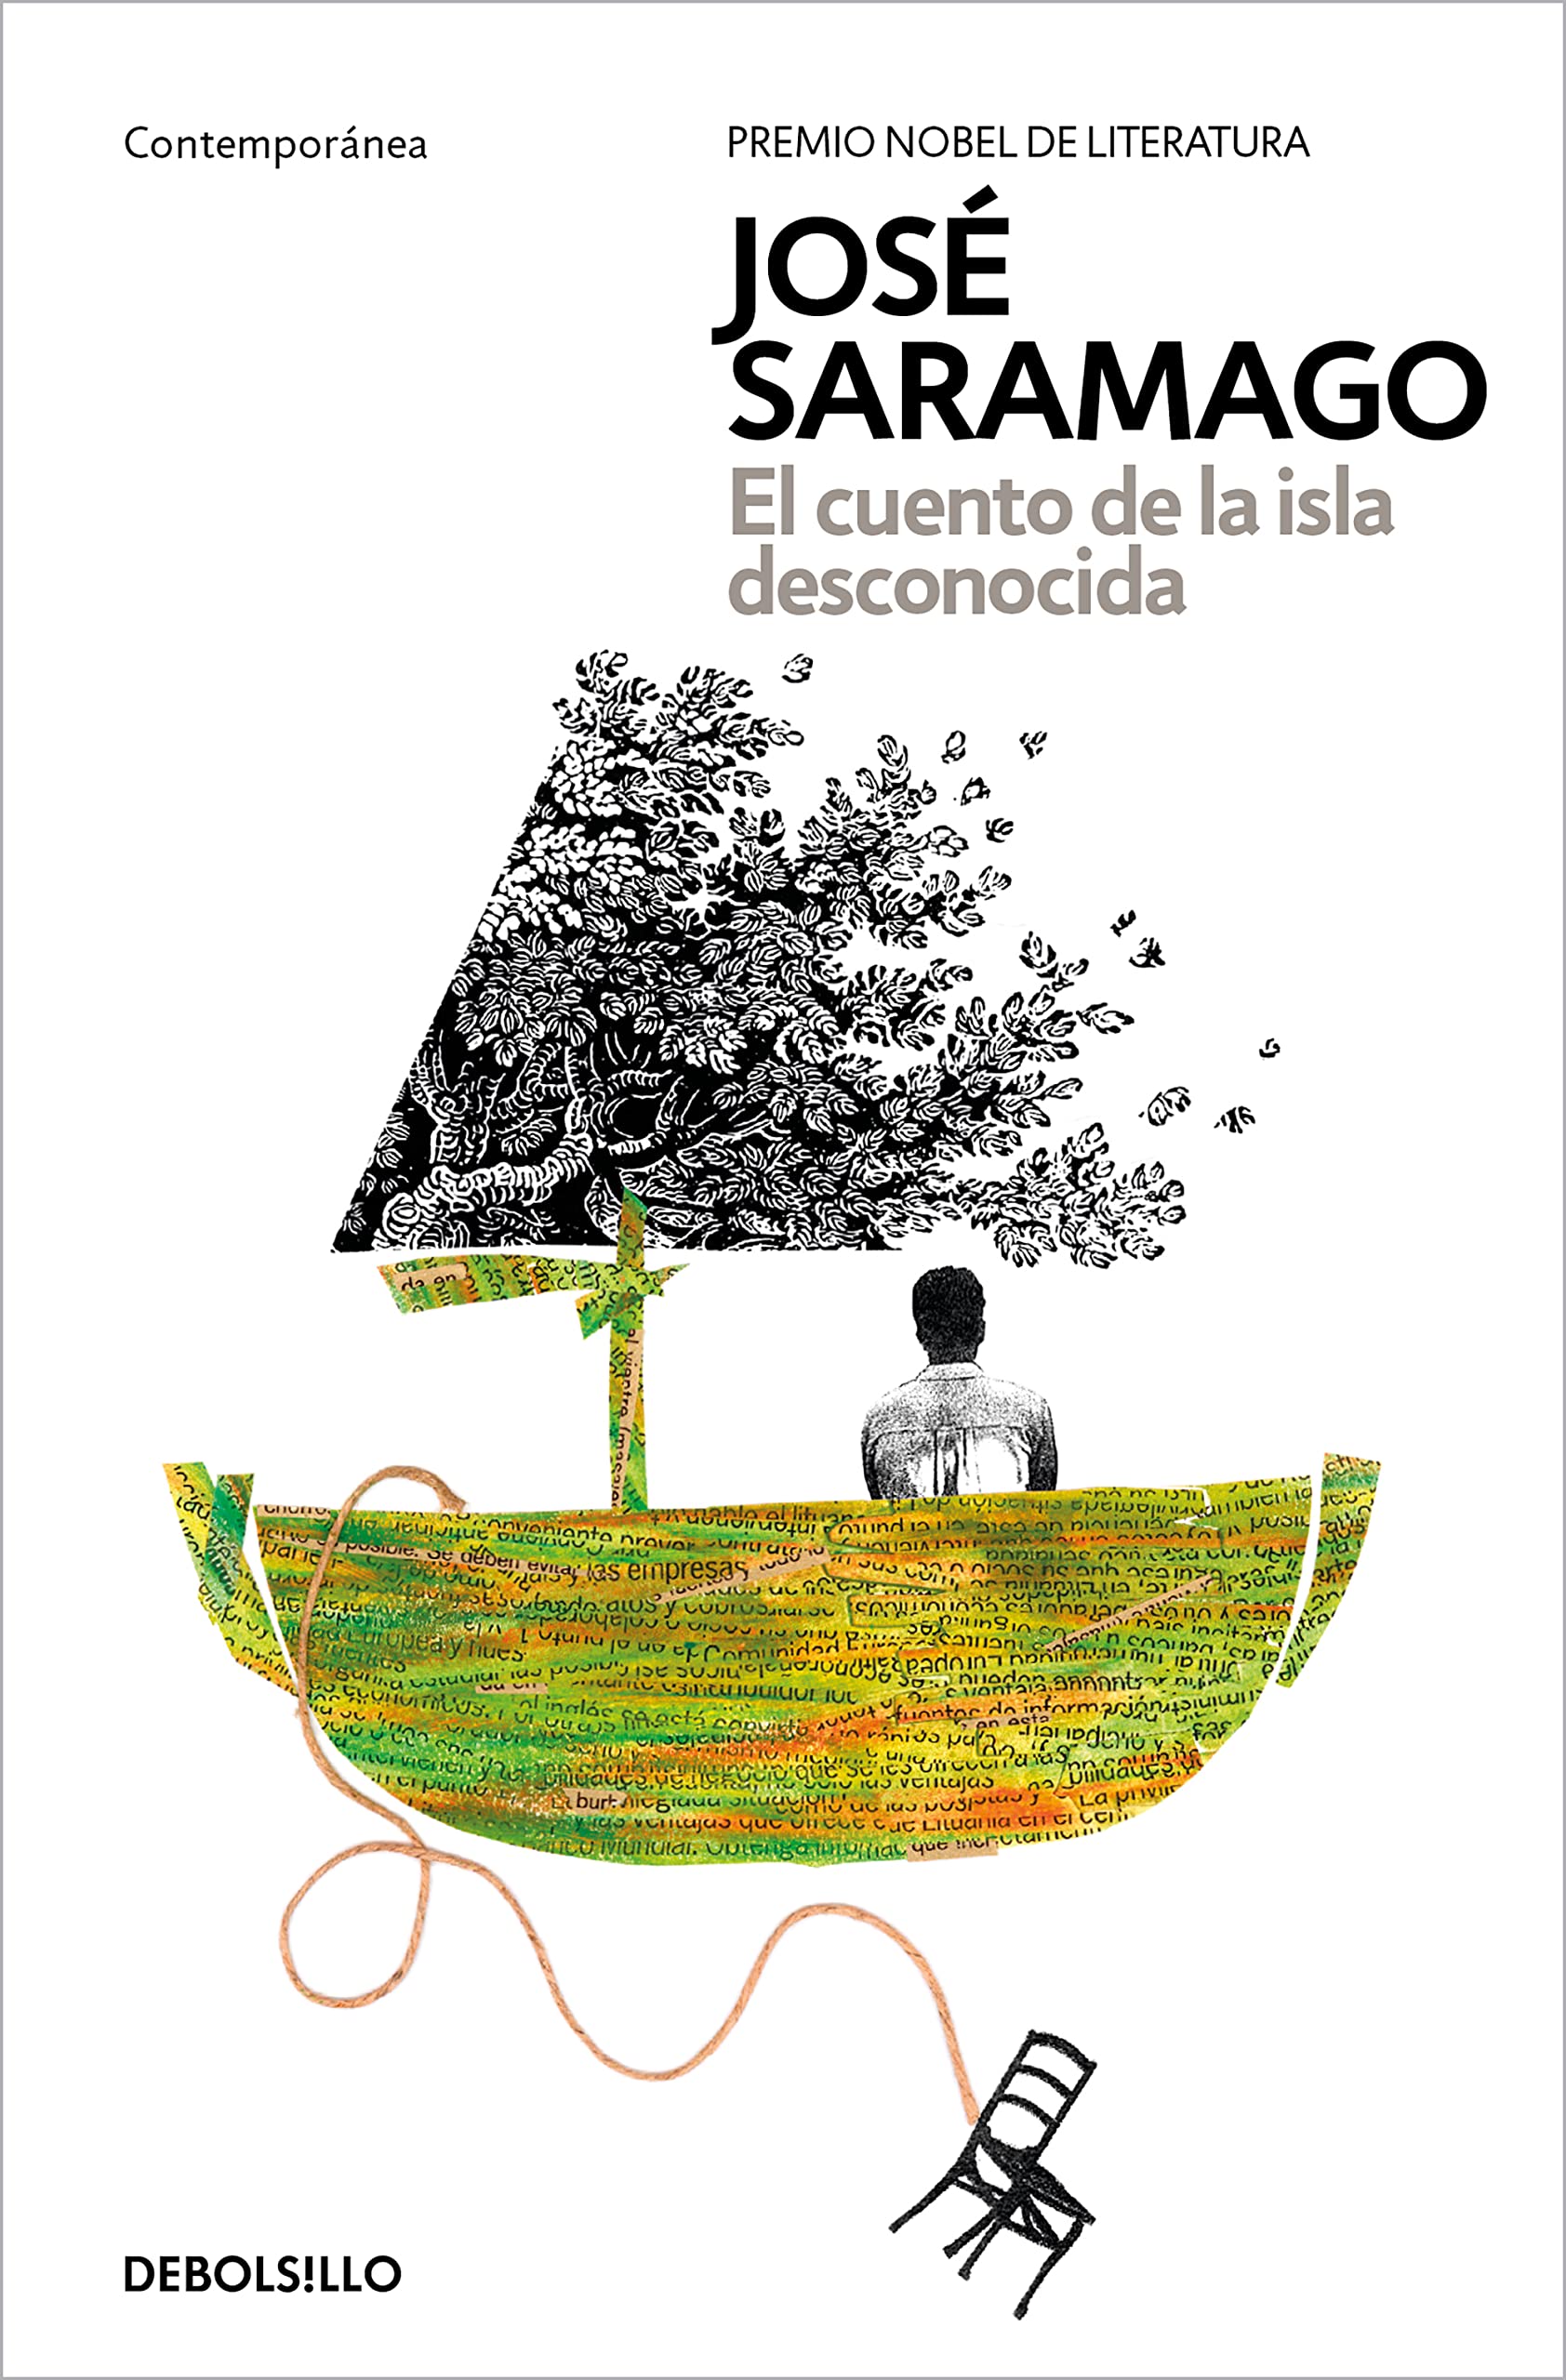 Zenda recomienda: El cuento de la isla desconocida, de José Saramago